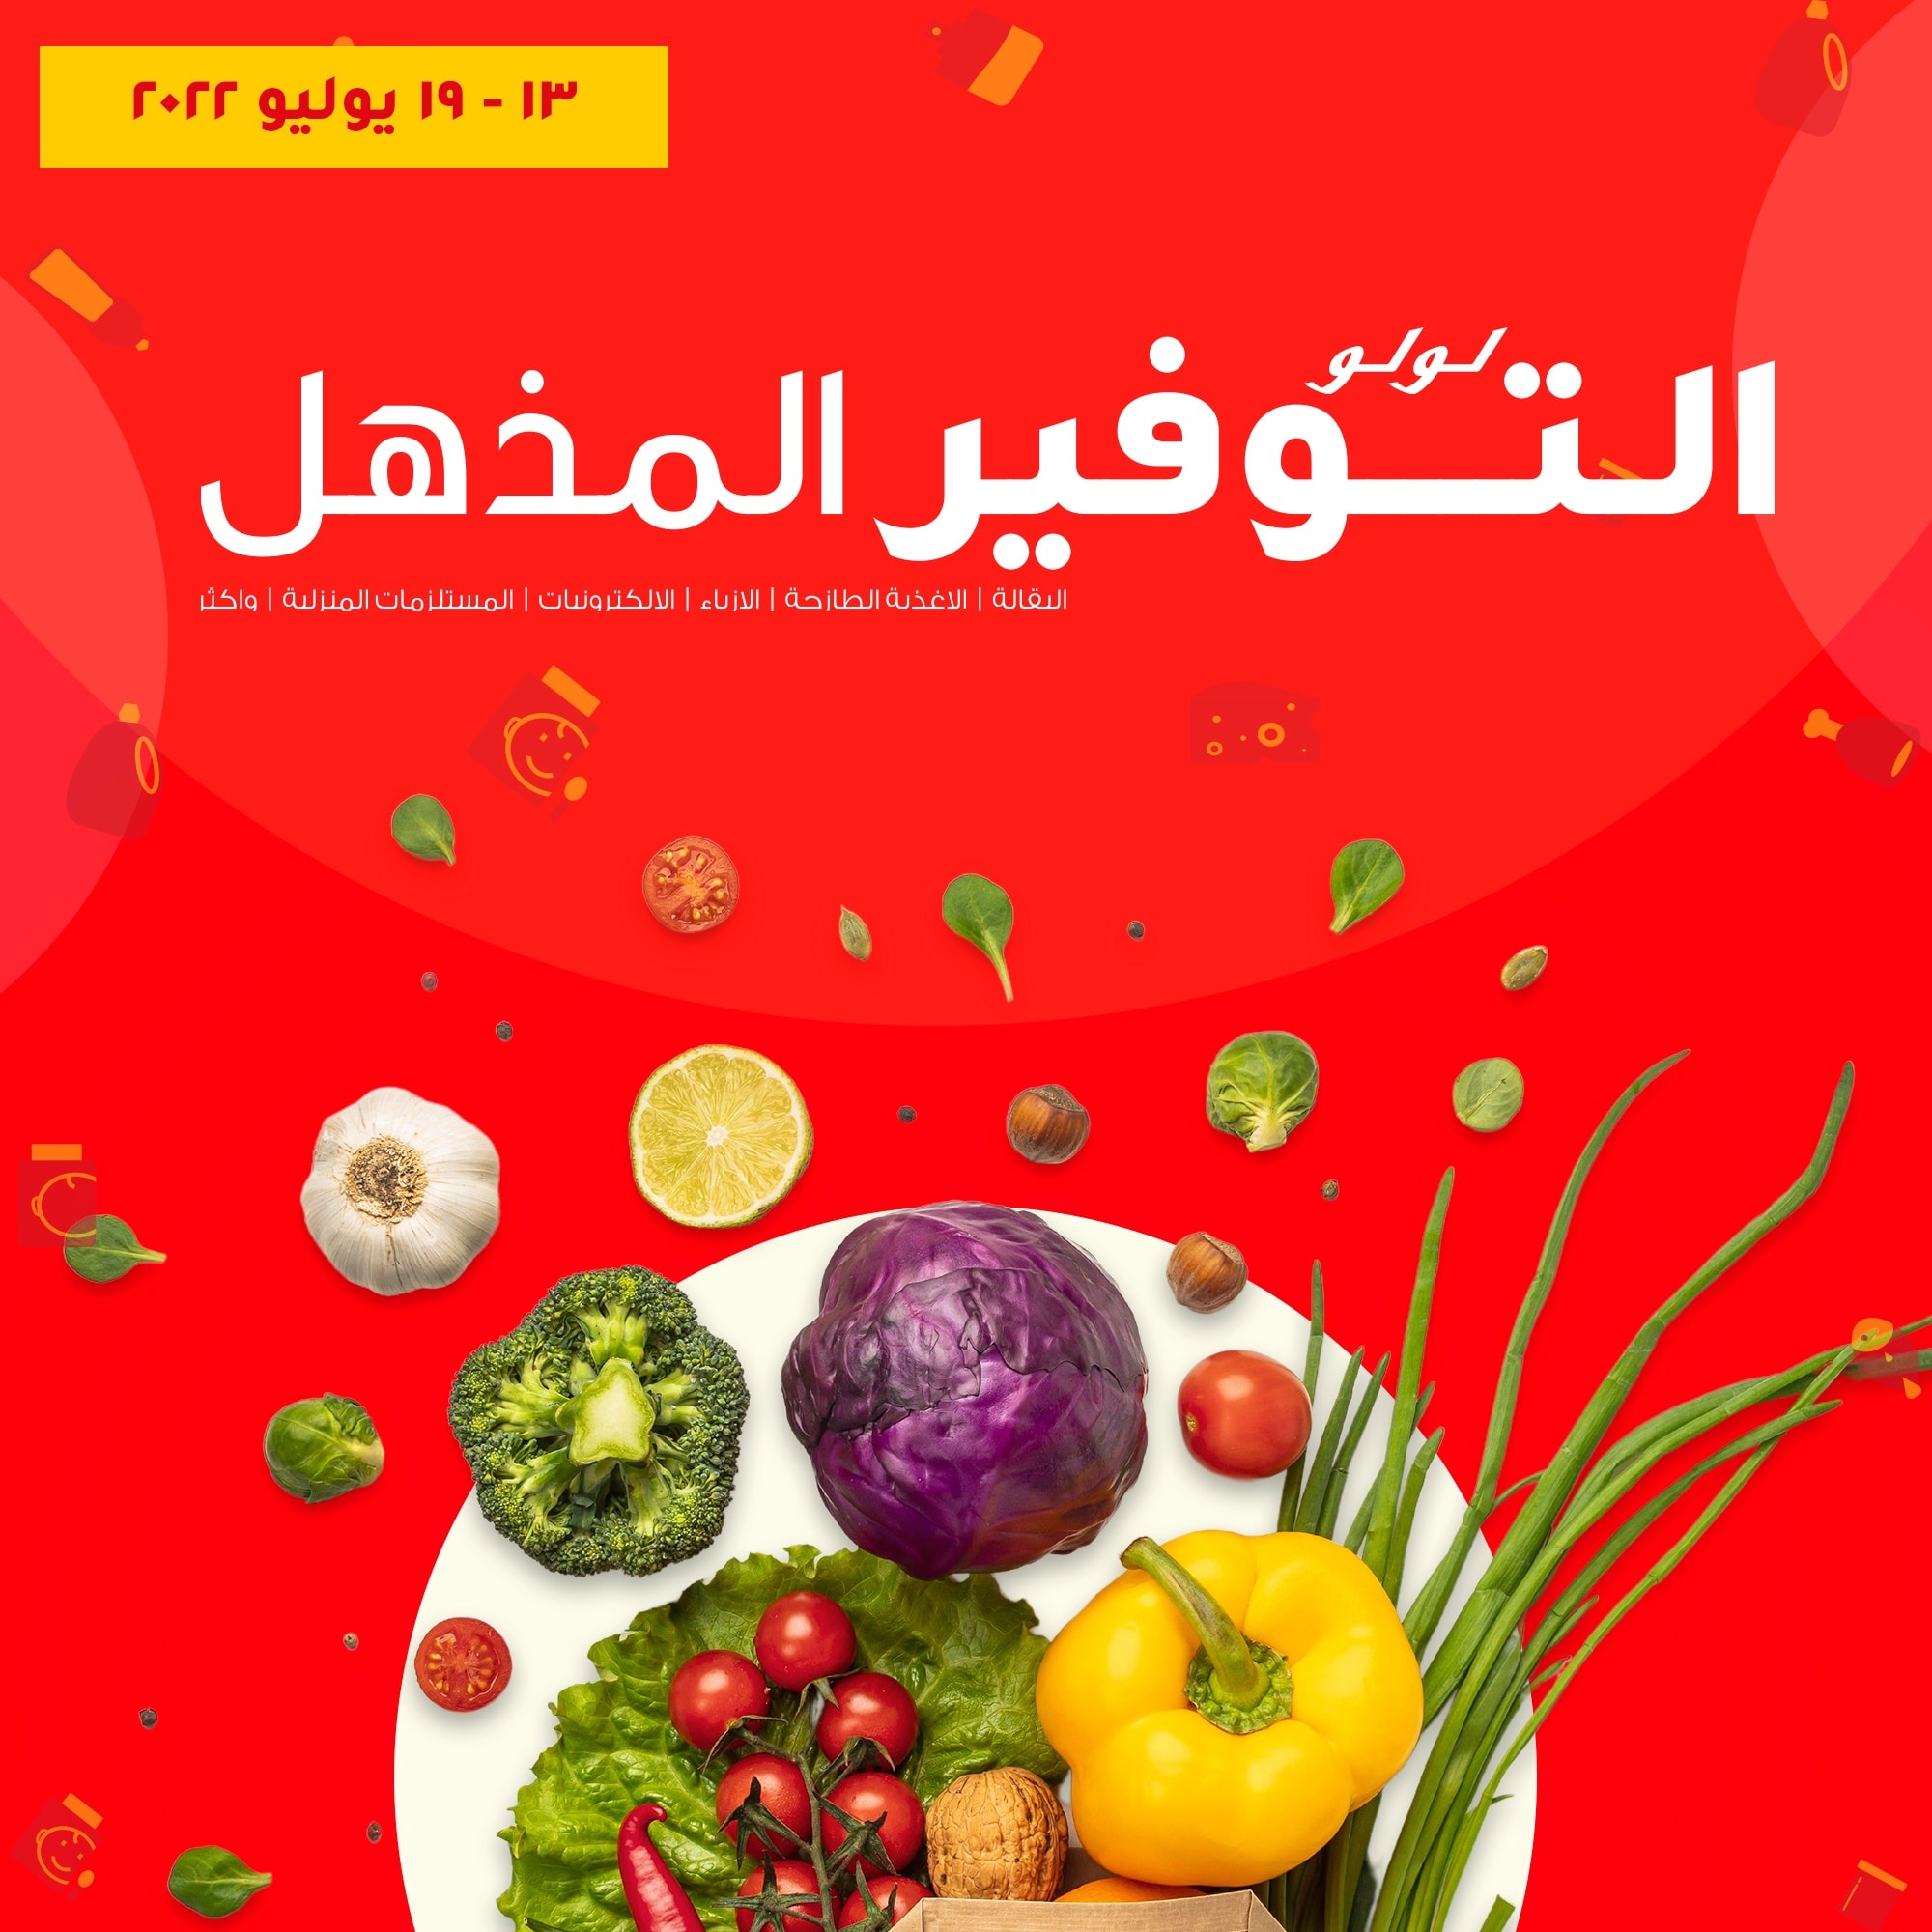 اشتري افضل الخضروات والفاكهة الطازجة النهاردة وبأقل سعر في عروض لولو هايبر ماركت مصر ولغاية يوم 19 يوليو 2022